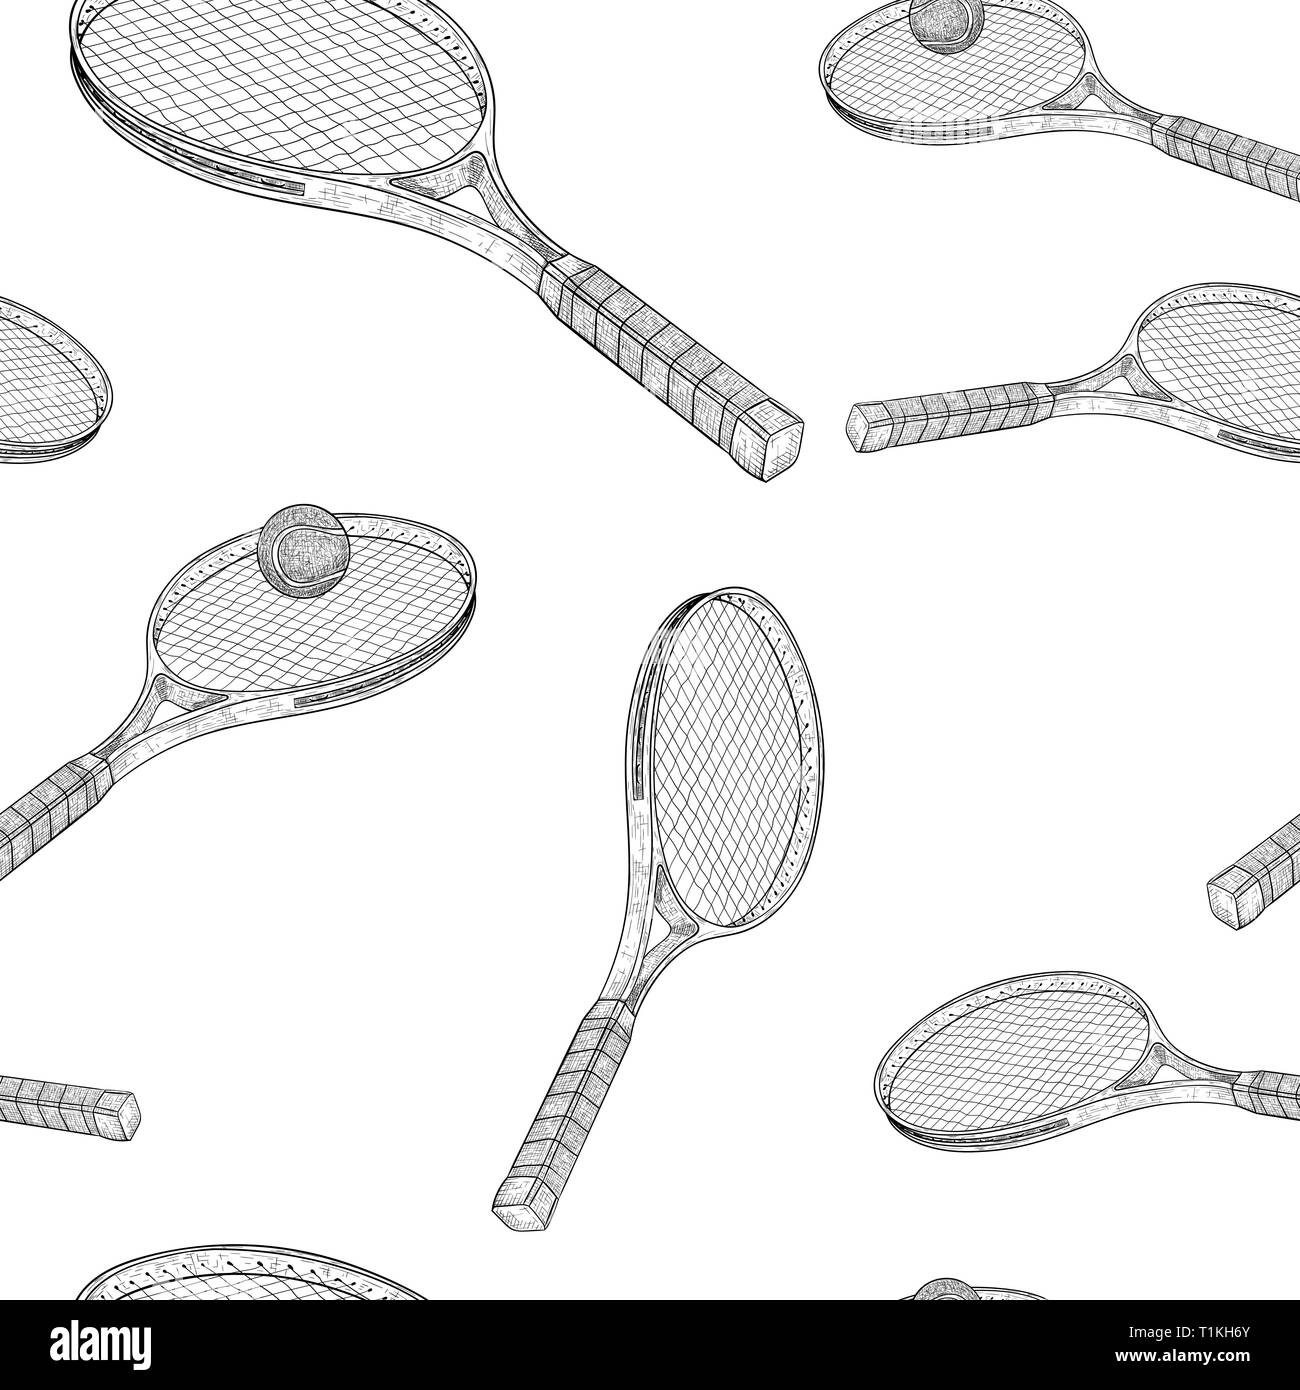 Raquette de tennis avec une balle. Croquis dessinés à la main. Fond transparent Illustration de Vecteur